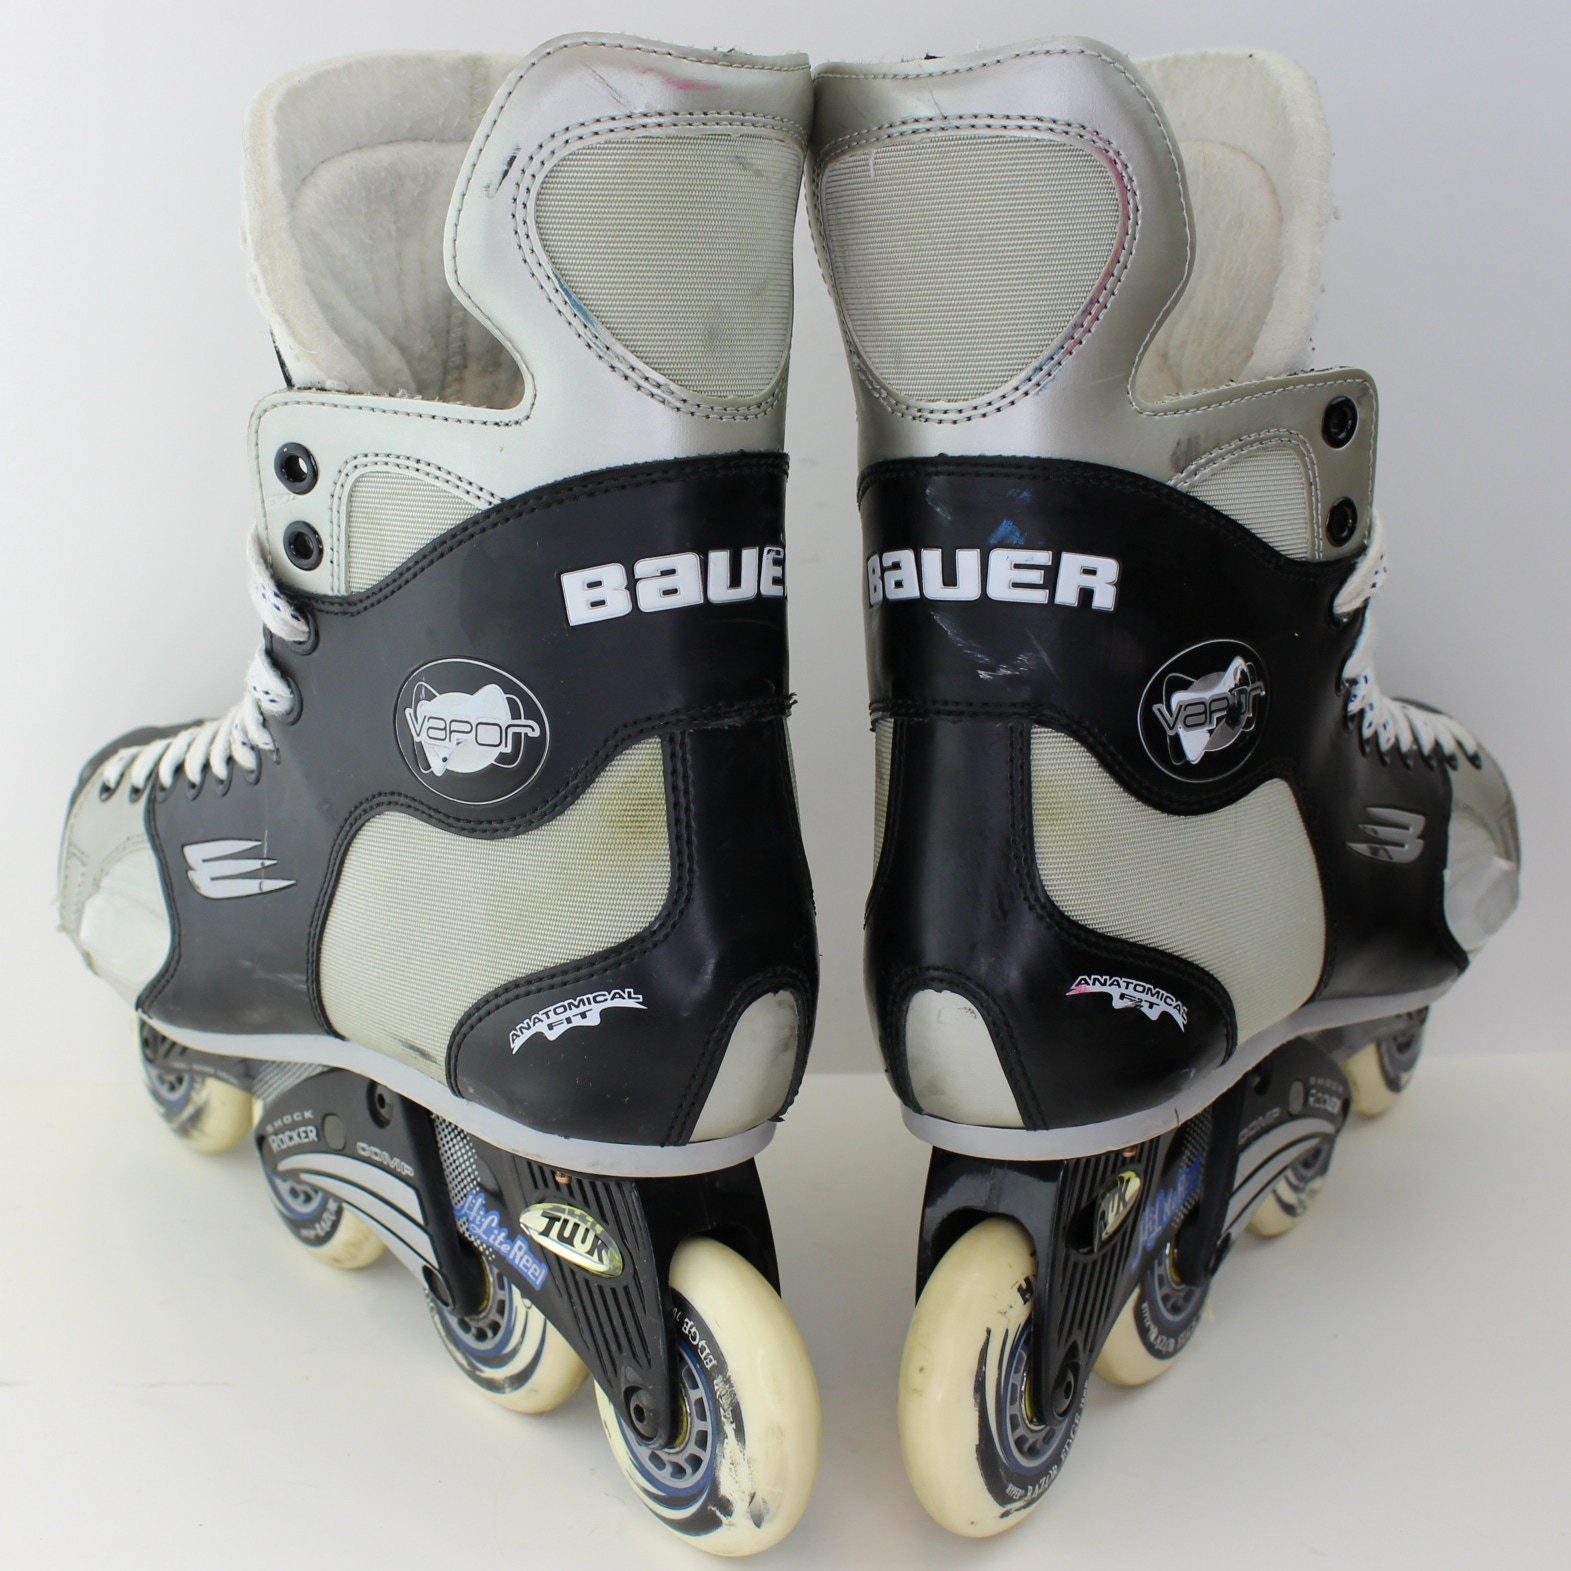 Used Bauer Vapor Agility Inline Skates Roller Blades Size 12 (Men Shoe Size 13)